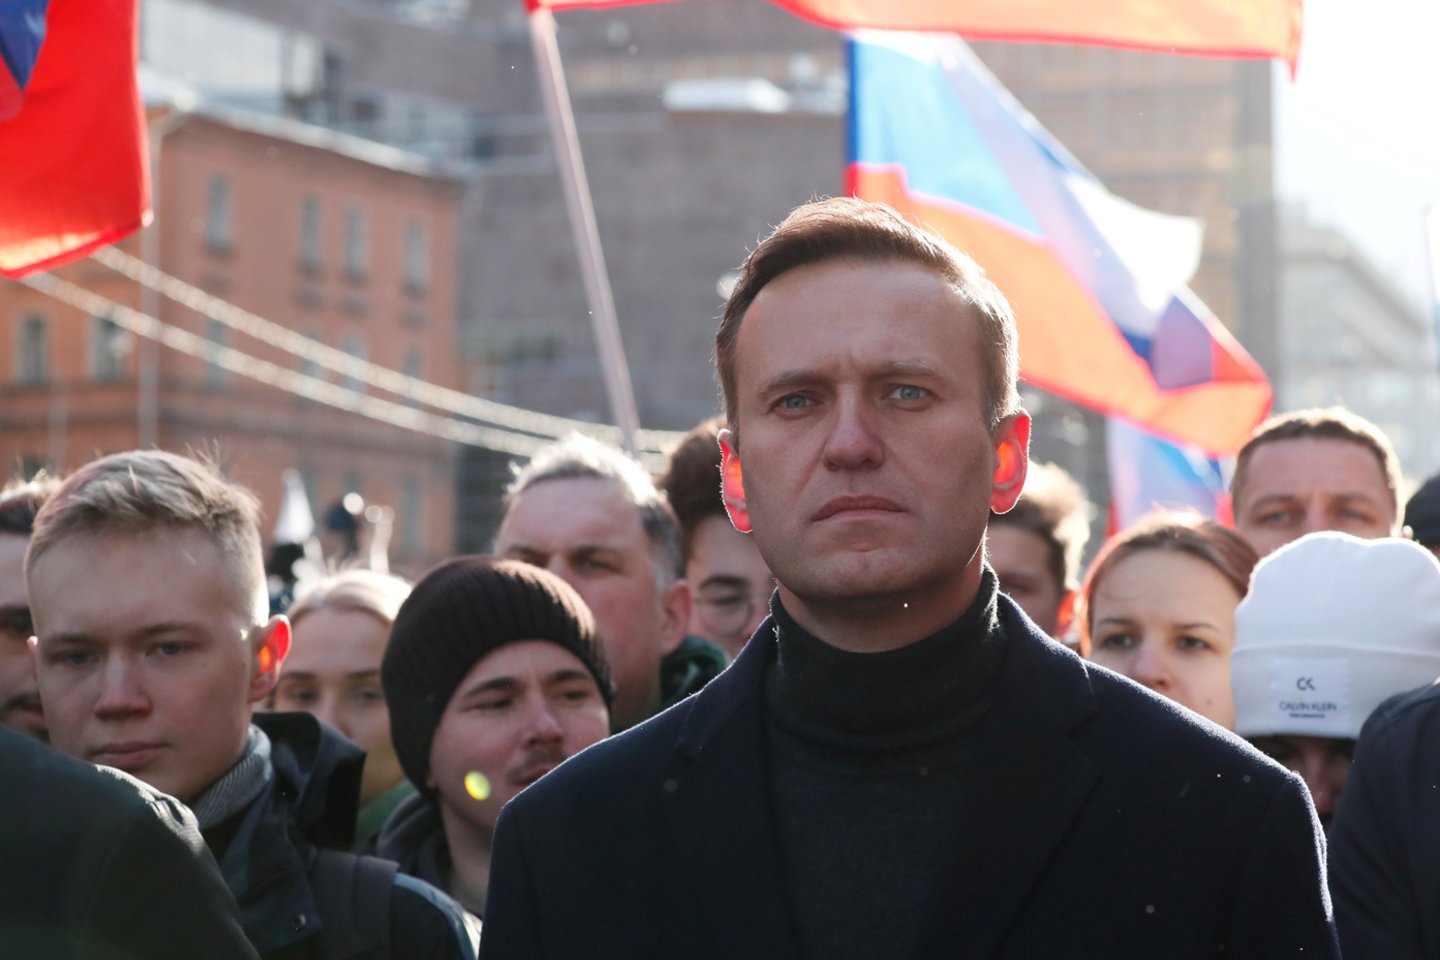 ​Jungtinė Karalystė sekmadienį pareiškė, kad Rusija turi atsakyti į „virtinę labai rimtų klausimų“ apie opozicijos lyderio Aleksejaus Navalno apnuodijimą, leisdama suprasti mananti, kad prie šio rezonansinio incidento tam tikru būdu galėjo prisidėti rusų valdžia.<br>Reuters/Scanpix nuotr.